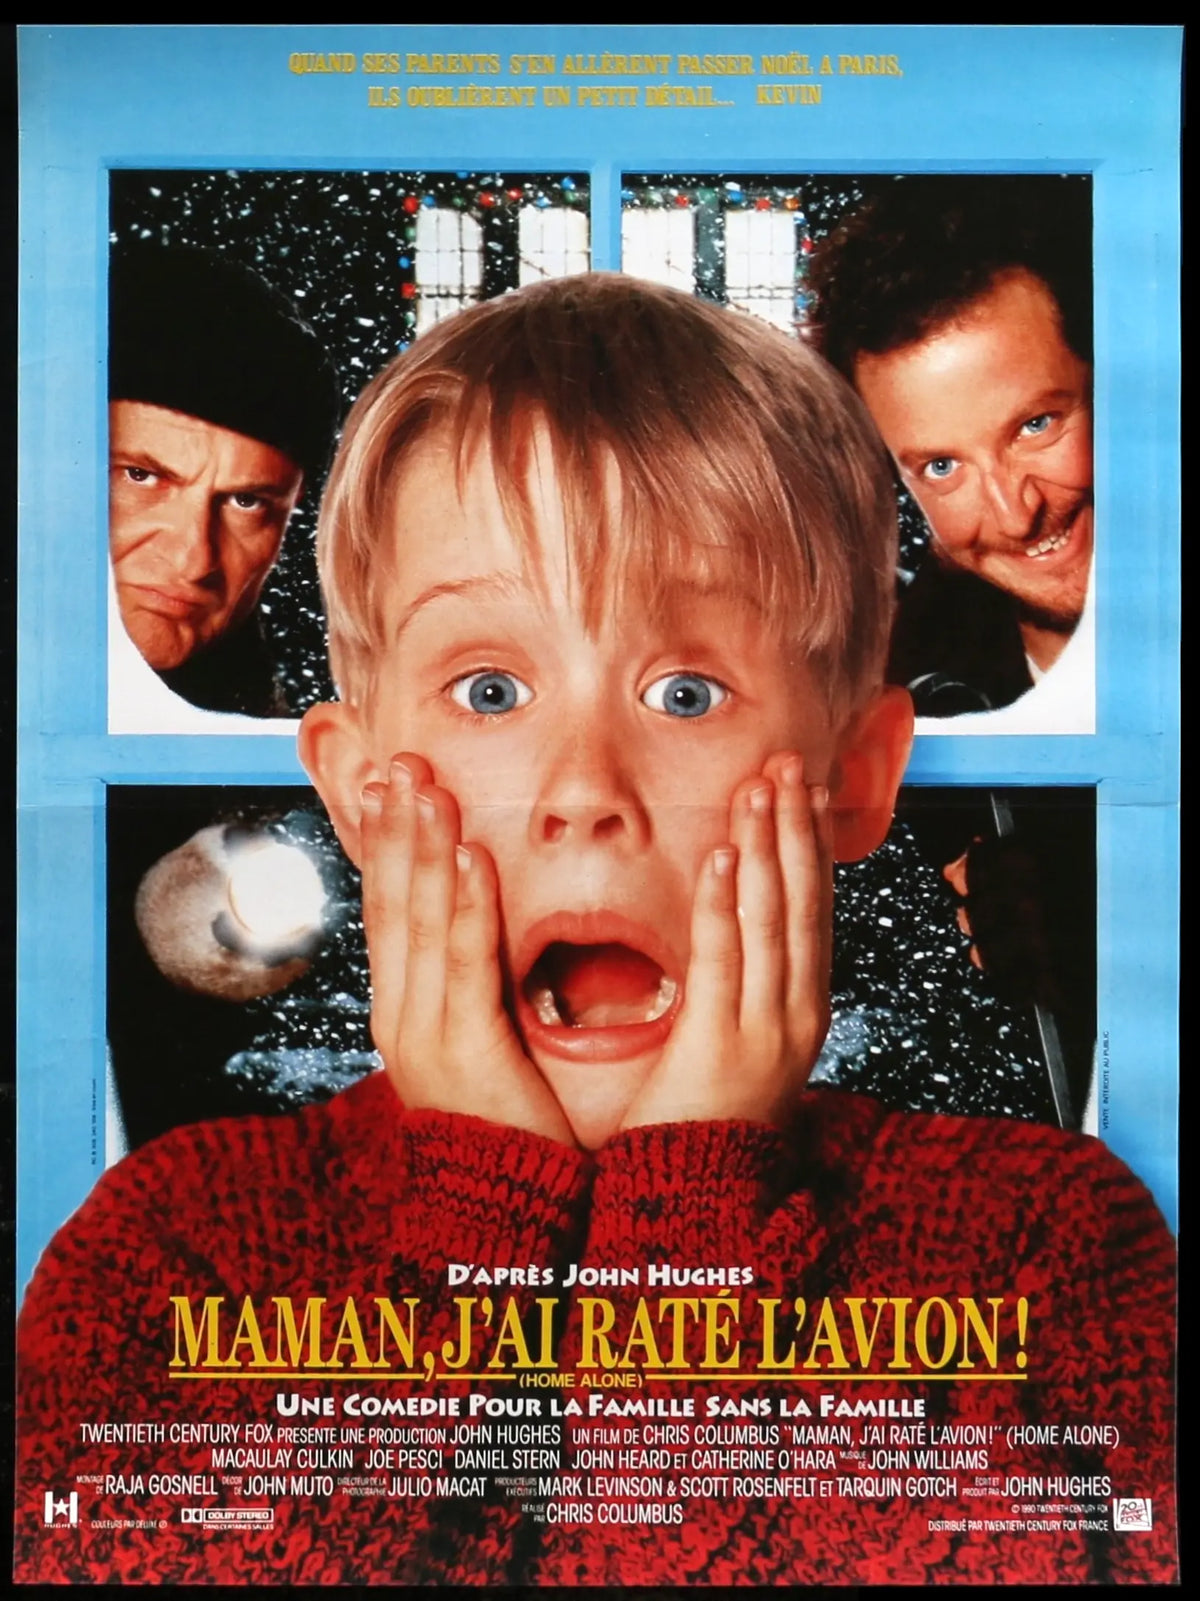 Home Alone (1990) original movie poster for sale at Original Film Art